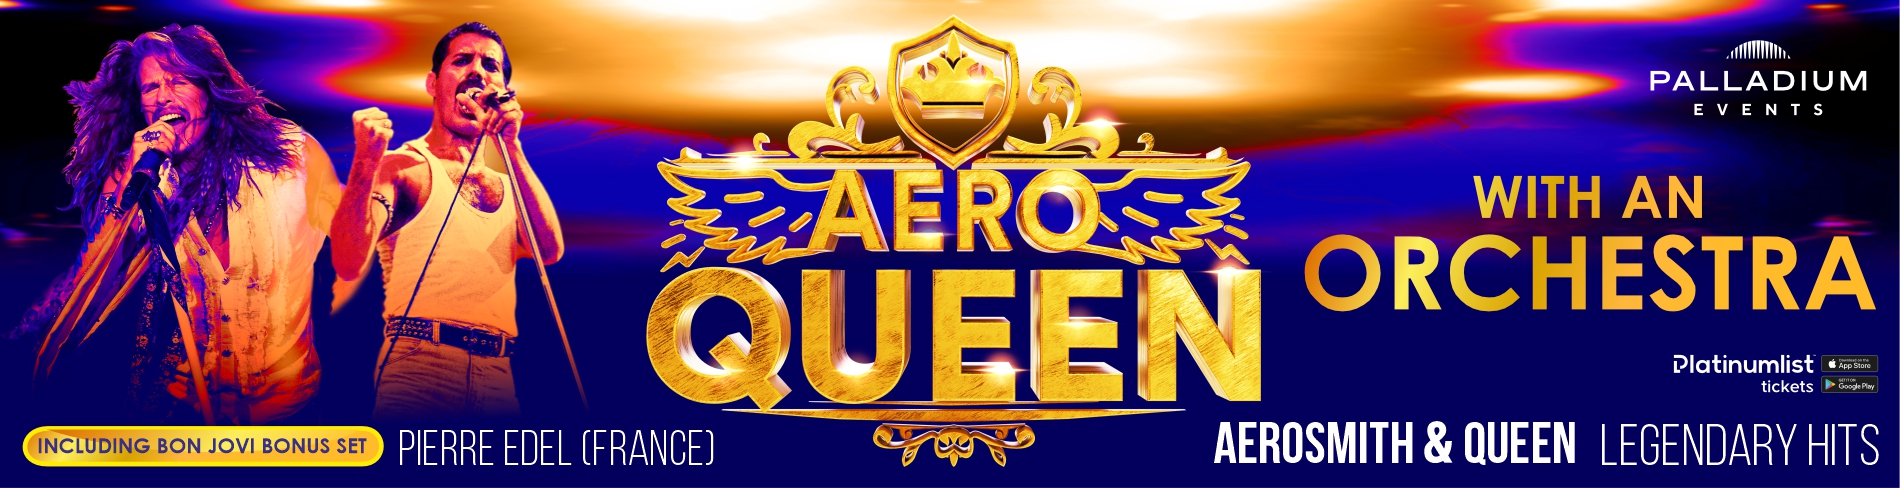 AEROQUEEN (Aerosmith & Queen) Legendary Hits